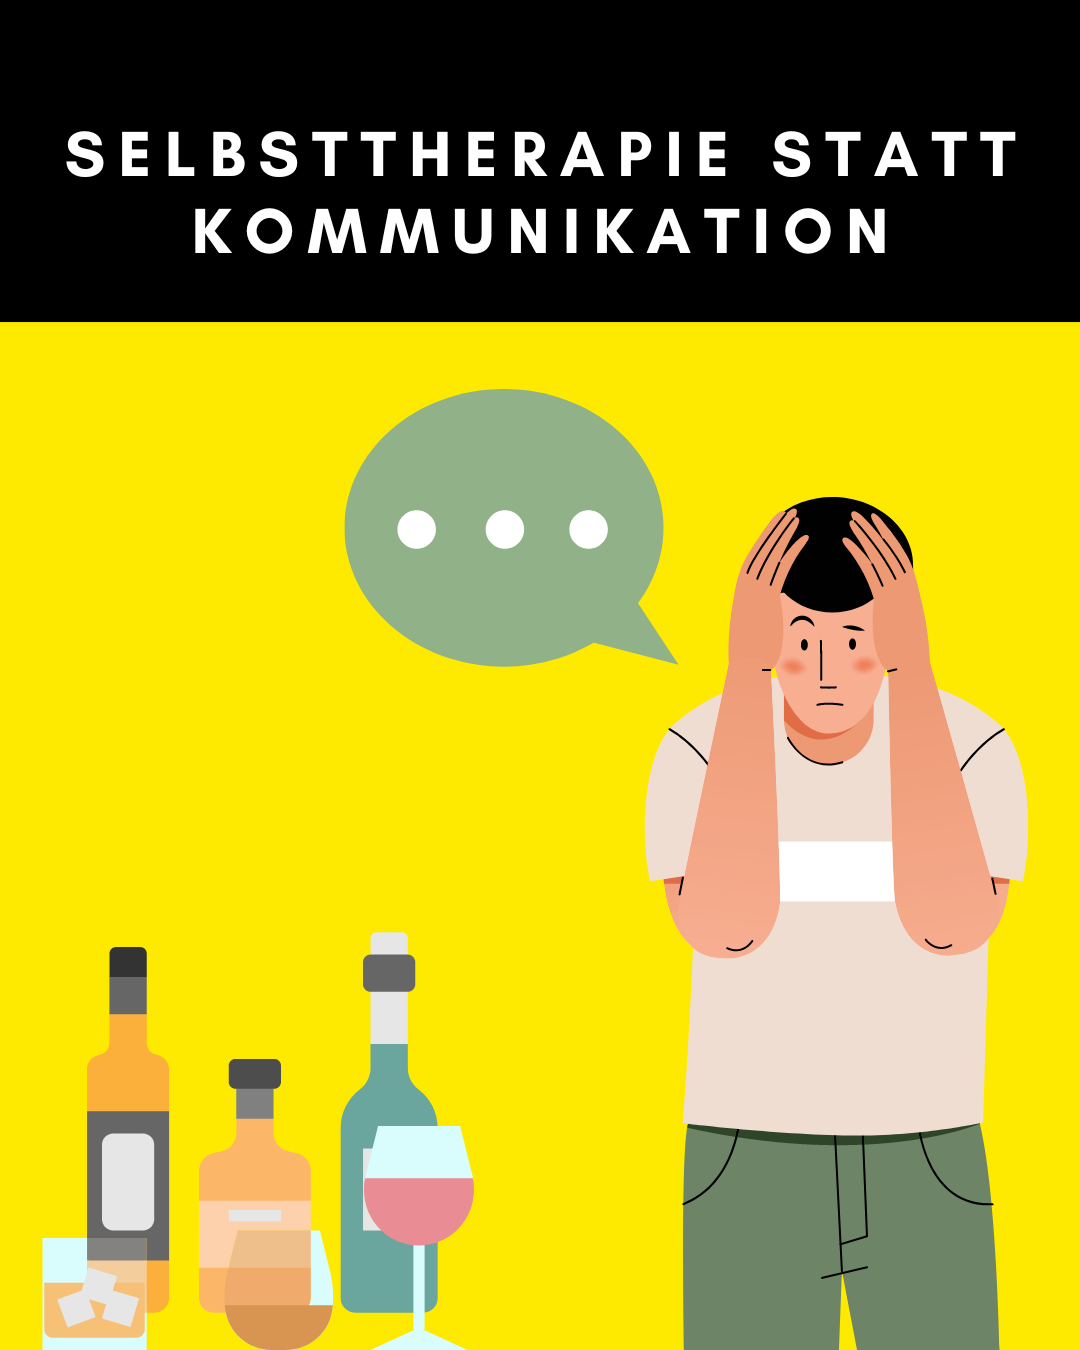 Selbsttherapie statt Kommunikation: Alkohol und Drogen aus Angst vor Gefühlen - The Wild Golden Egg